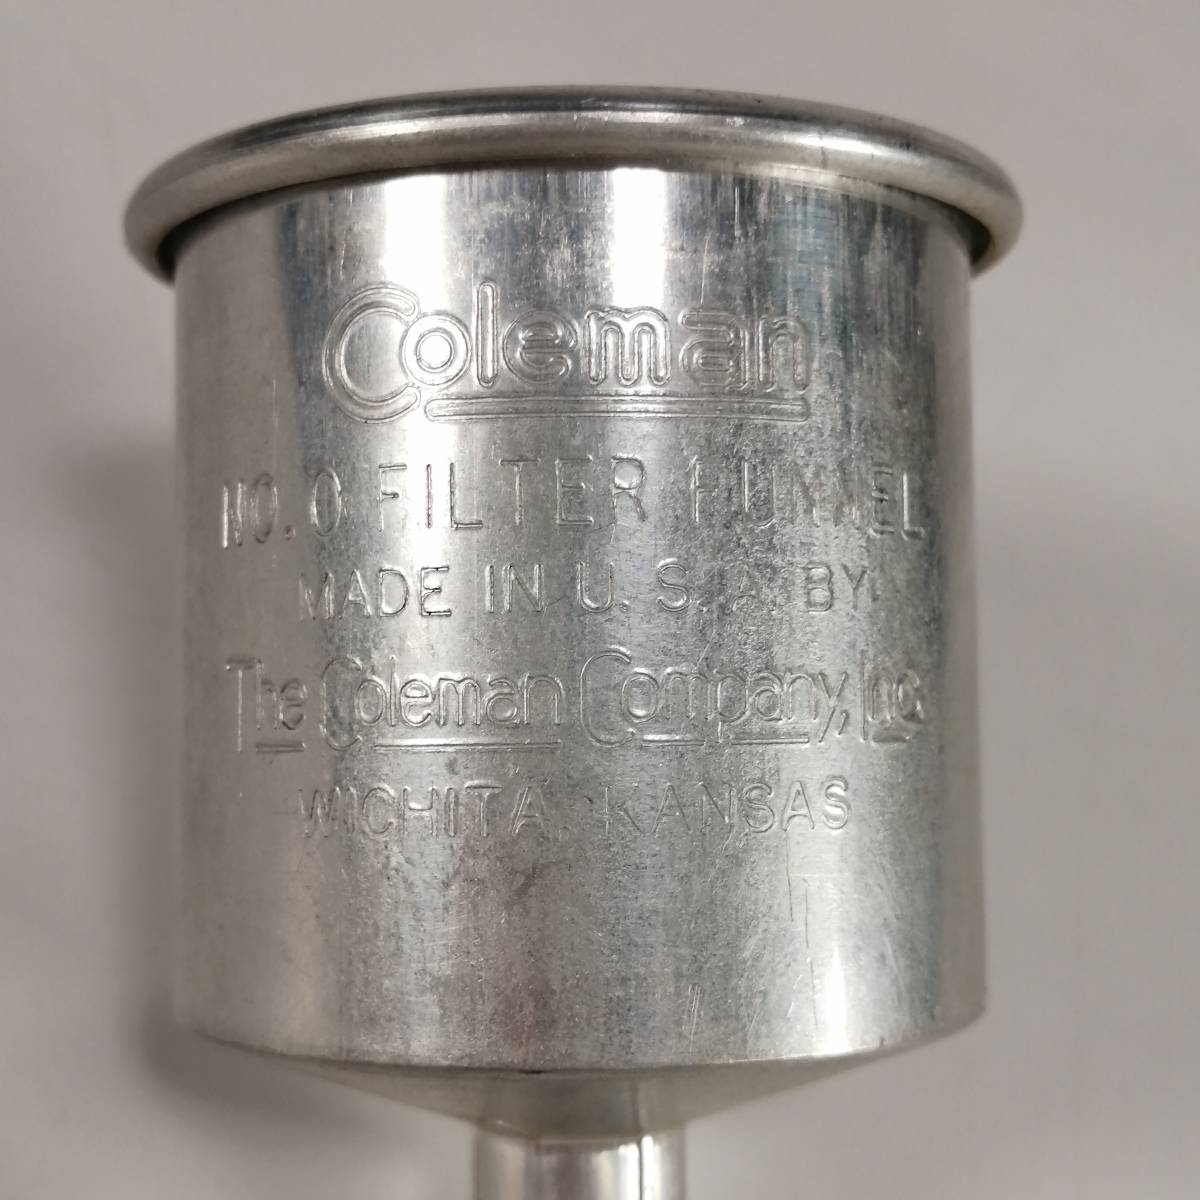 Coleman Coleman aluminium фильтр воронка No 0 Vintage фонарь воронка кемпинг 